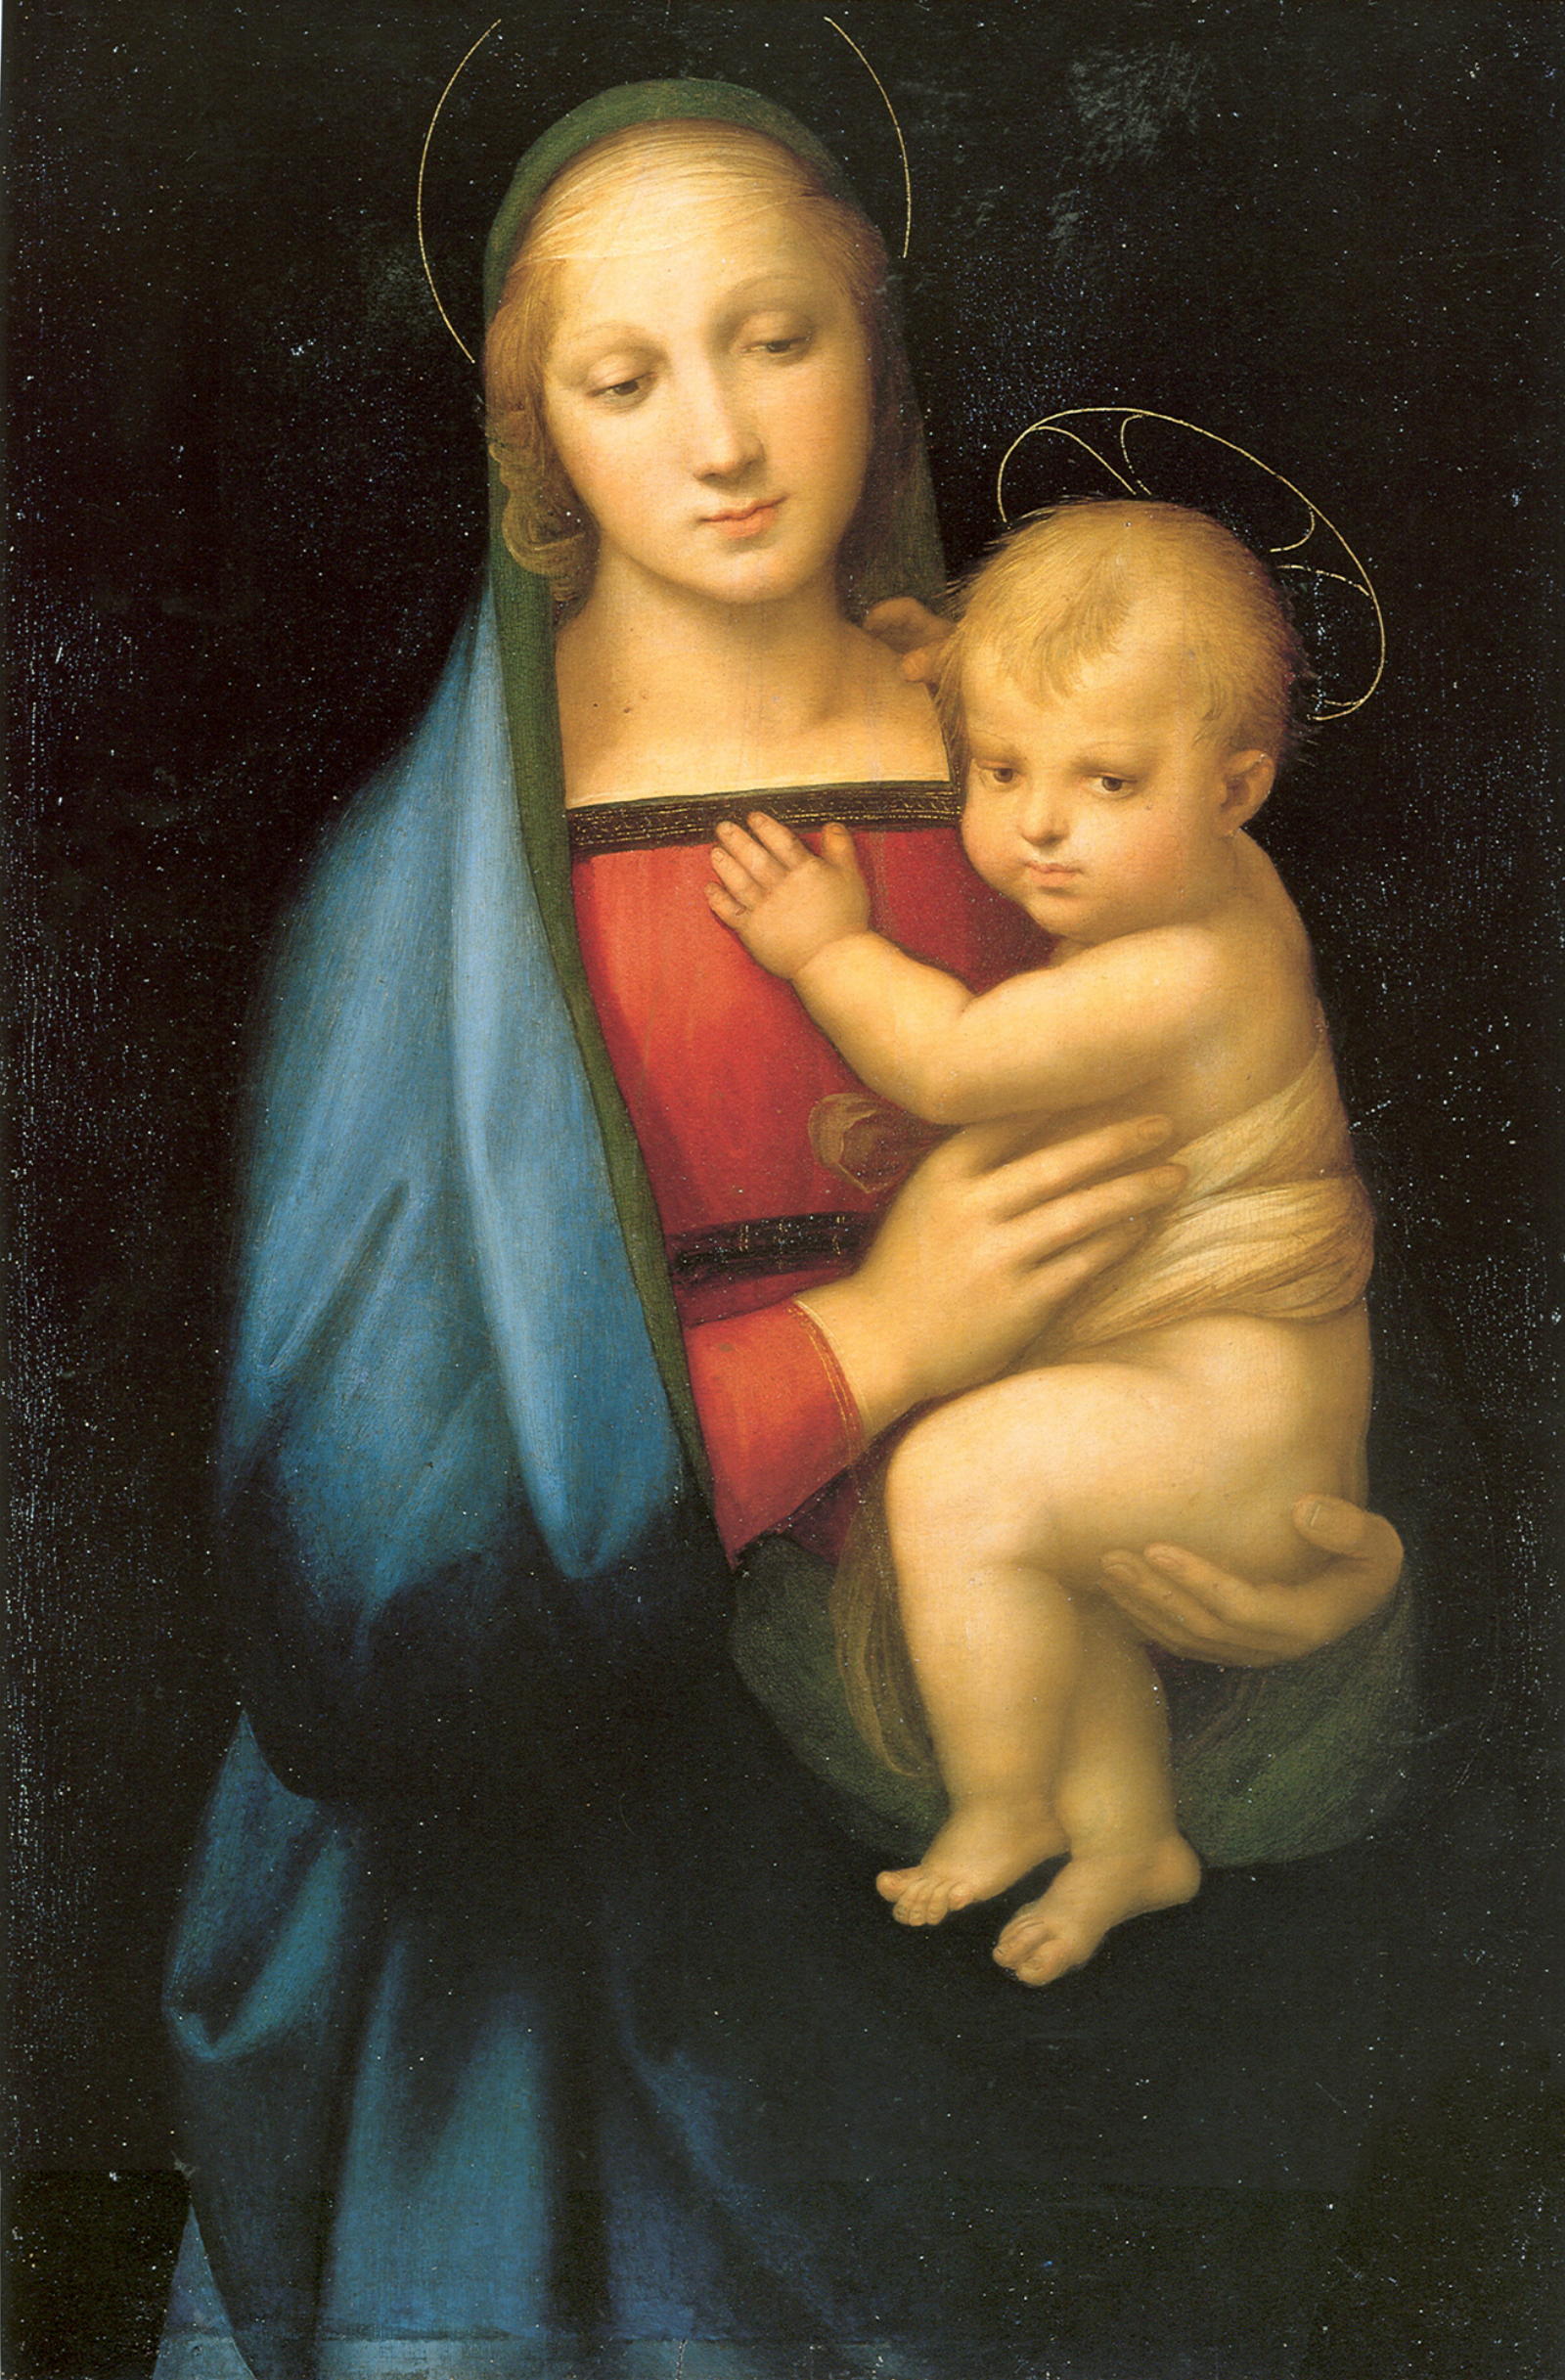 圣母玛利亚 by Raphael Santi - 1505 - 84 x 55 cm 